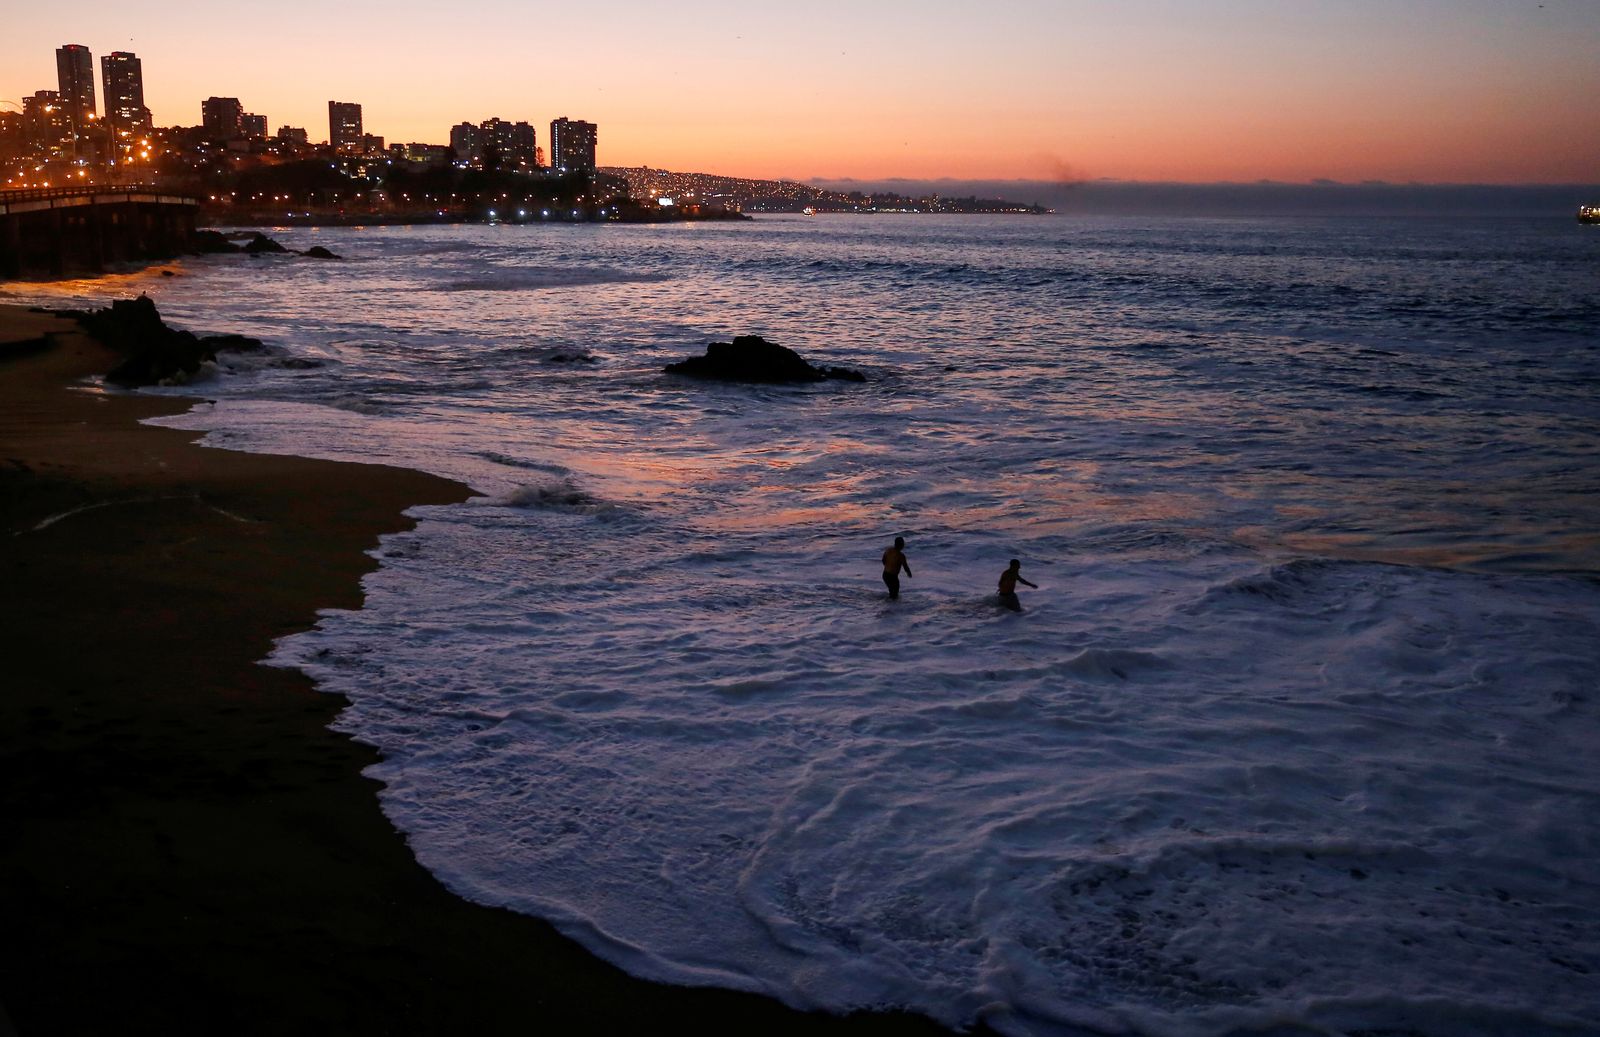 مكتب الطوارئ الوطني حض التشيليين على ترك المناطق الساحلية بعد زلزال في إقليم أنتاركتيكا التشيلي - REUTERS